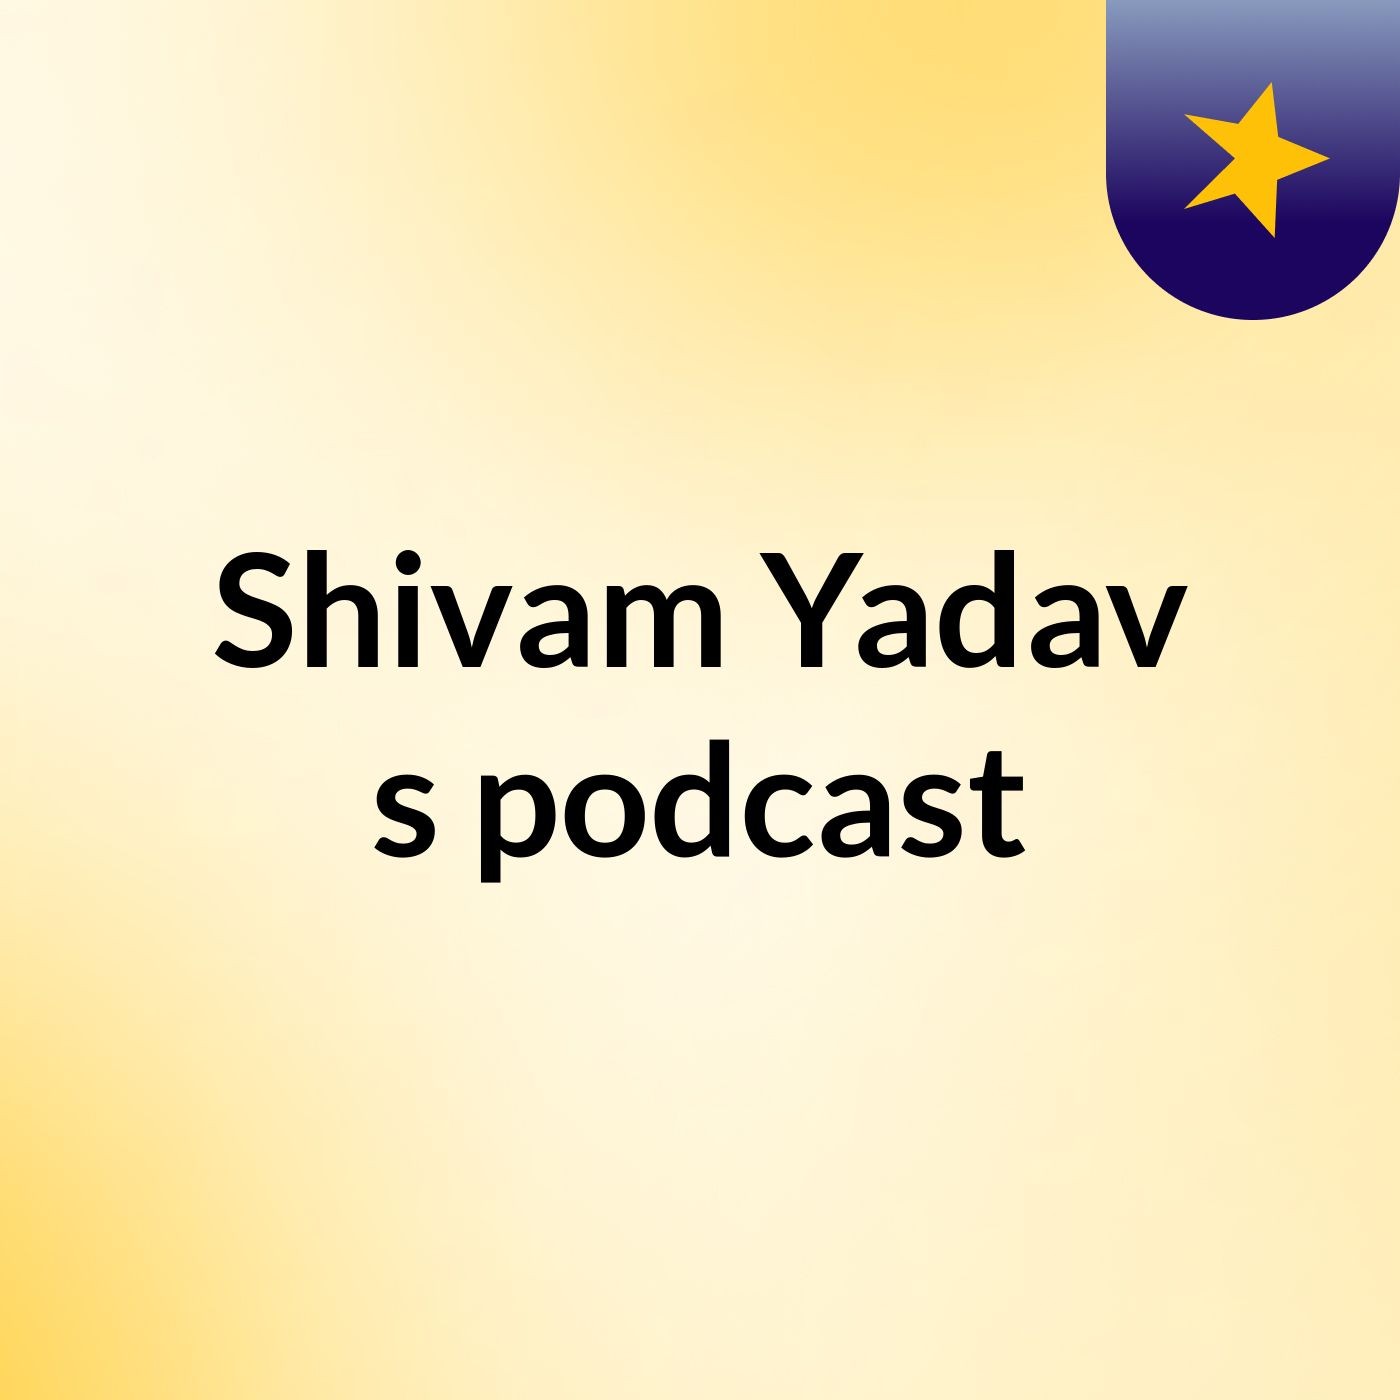 Episode 9 - Shivam Yadav's podcast